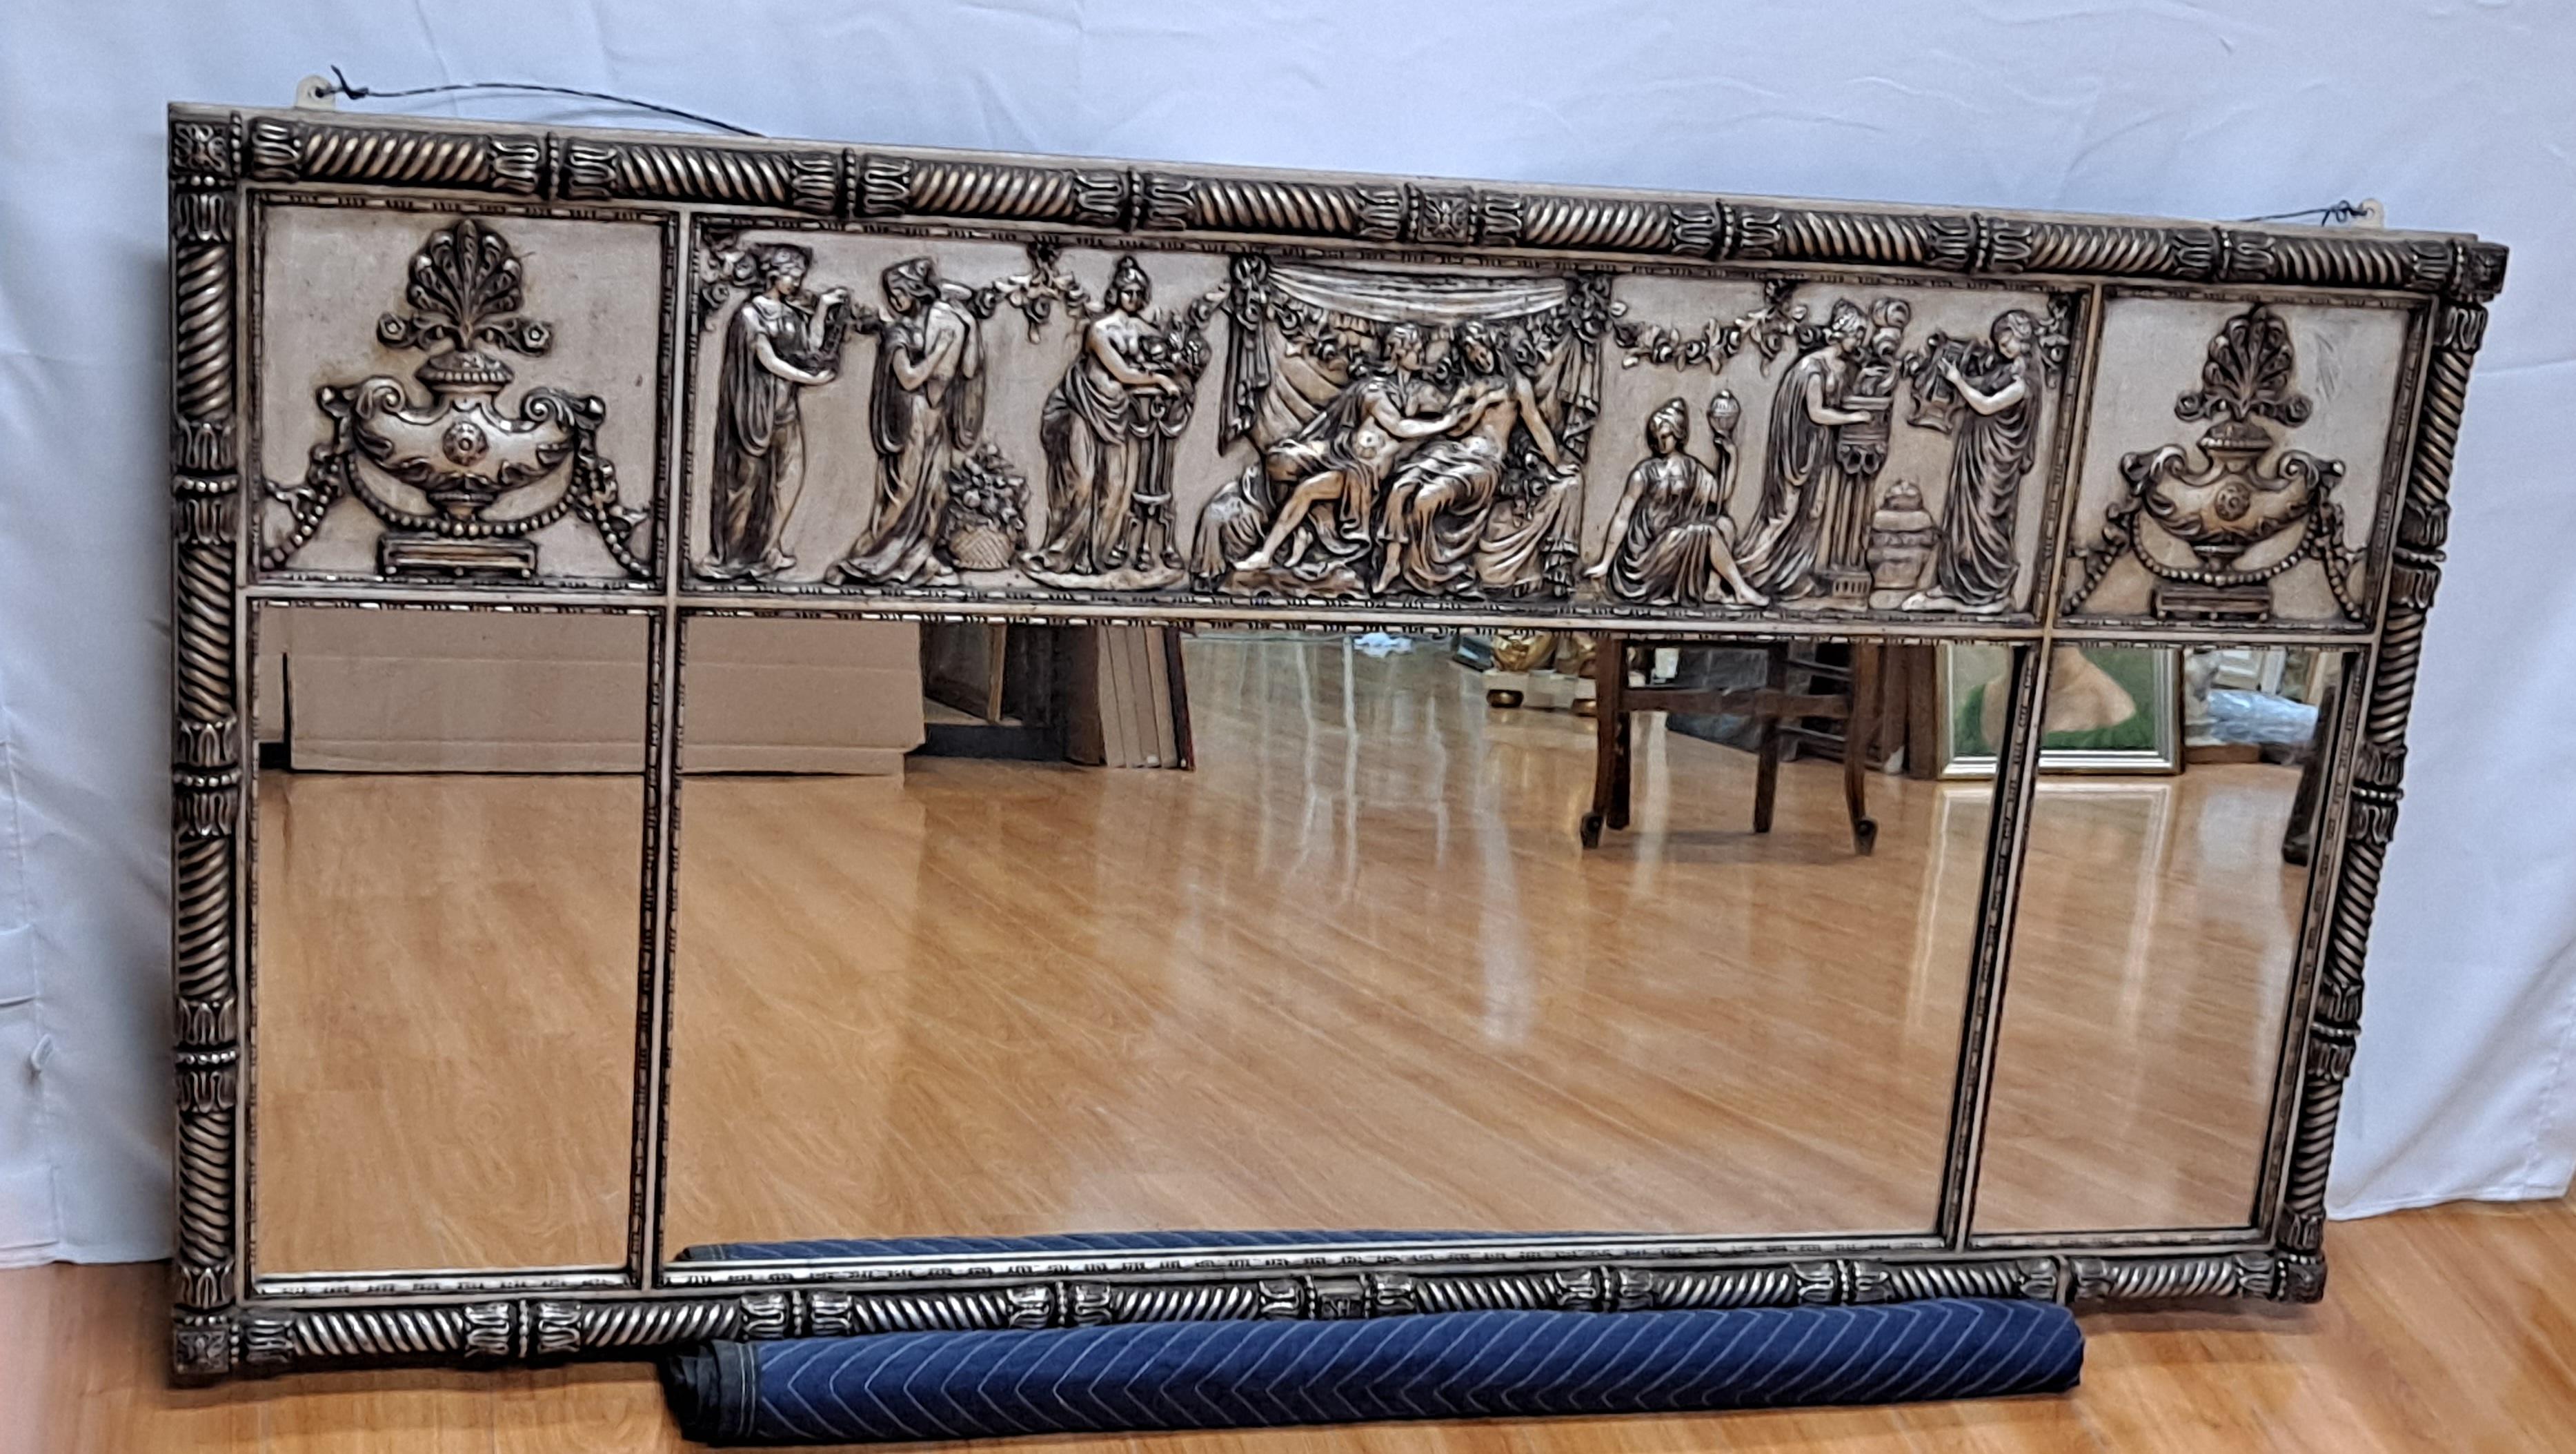 Großer versilberter klassischer Spiegel aus Holz mit Dekoration im römischen Stil

32h x 2.25d x 62l